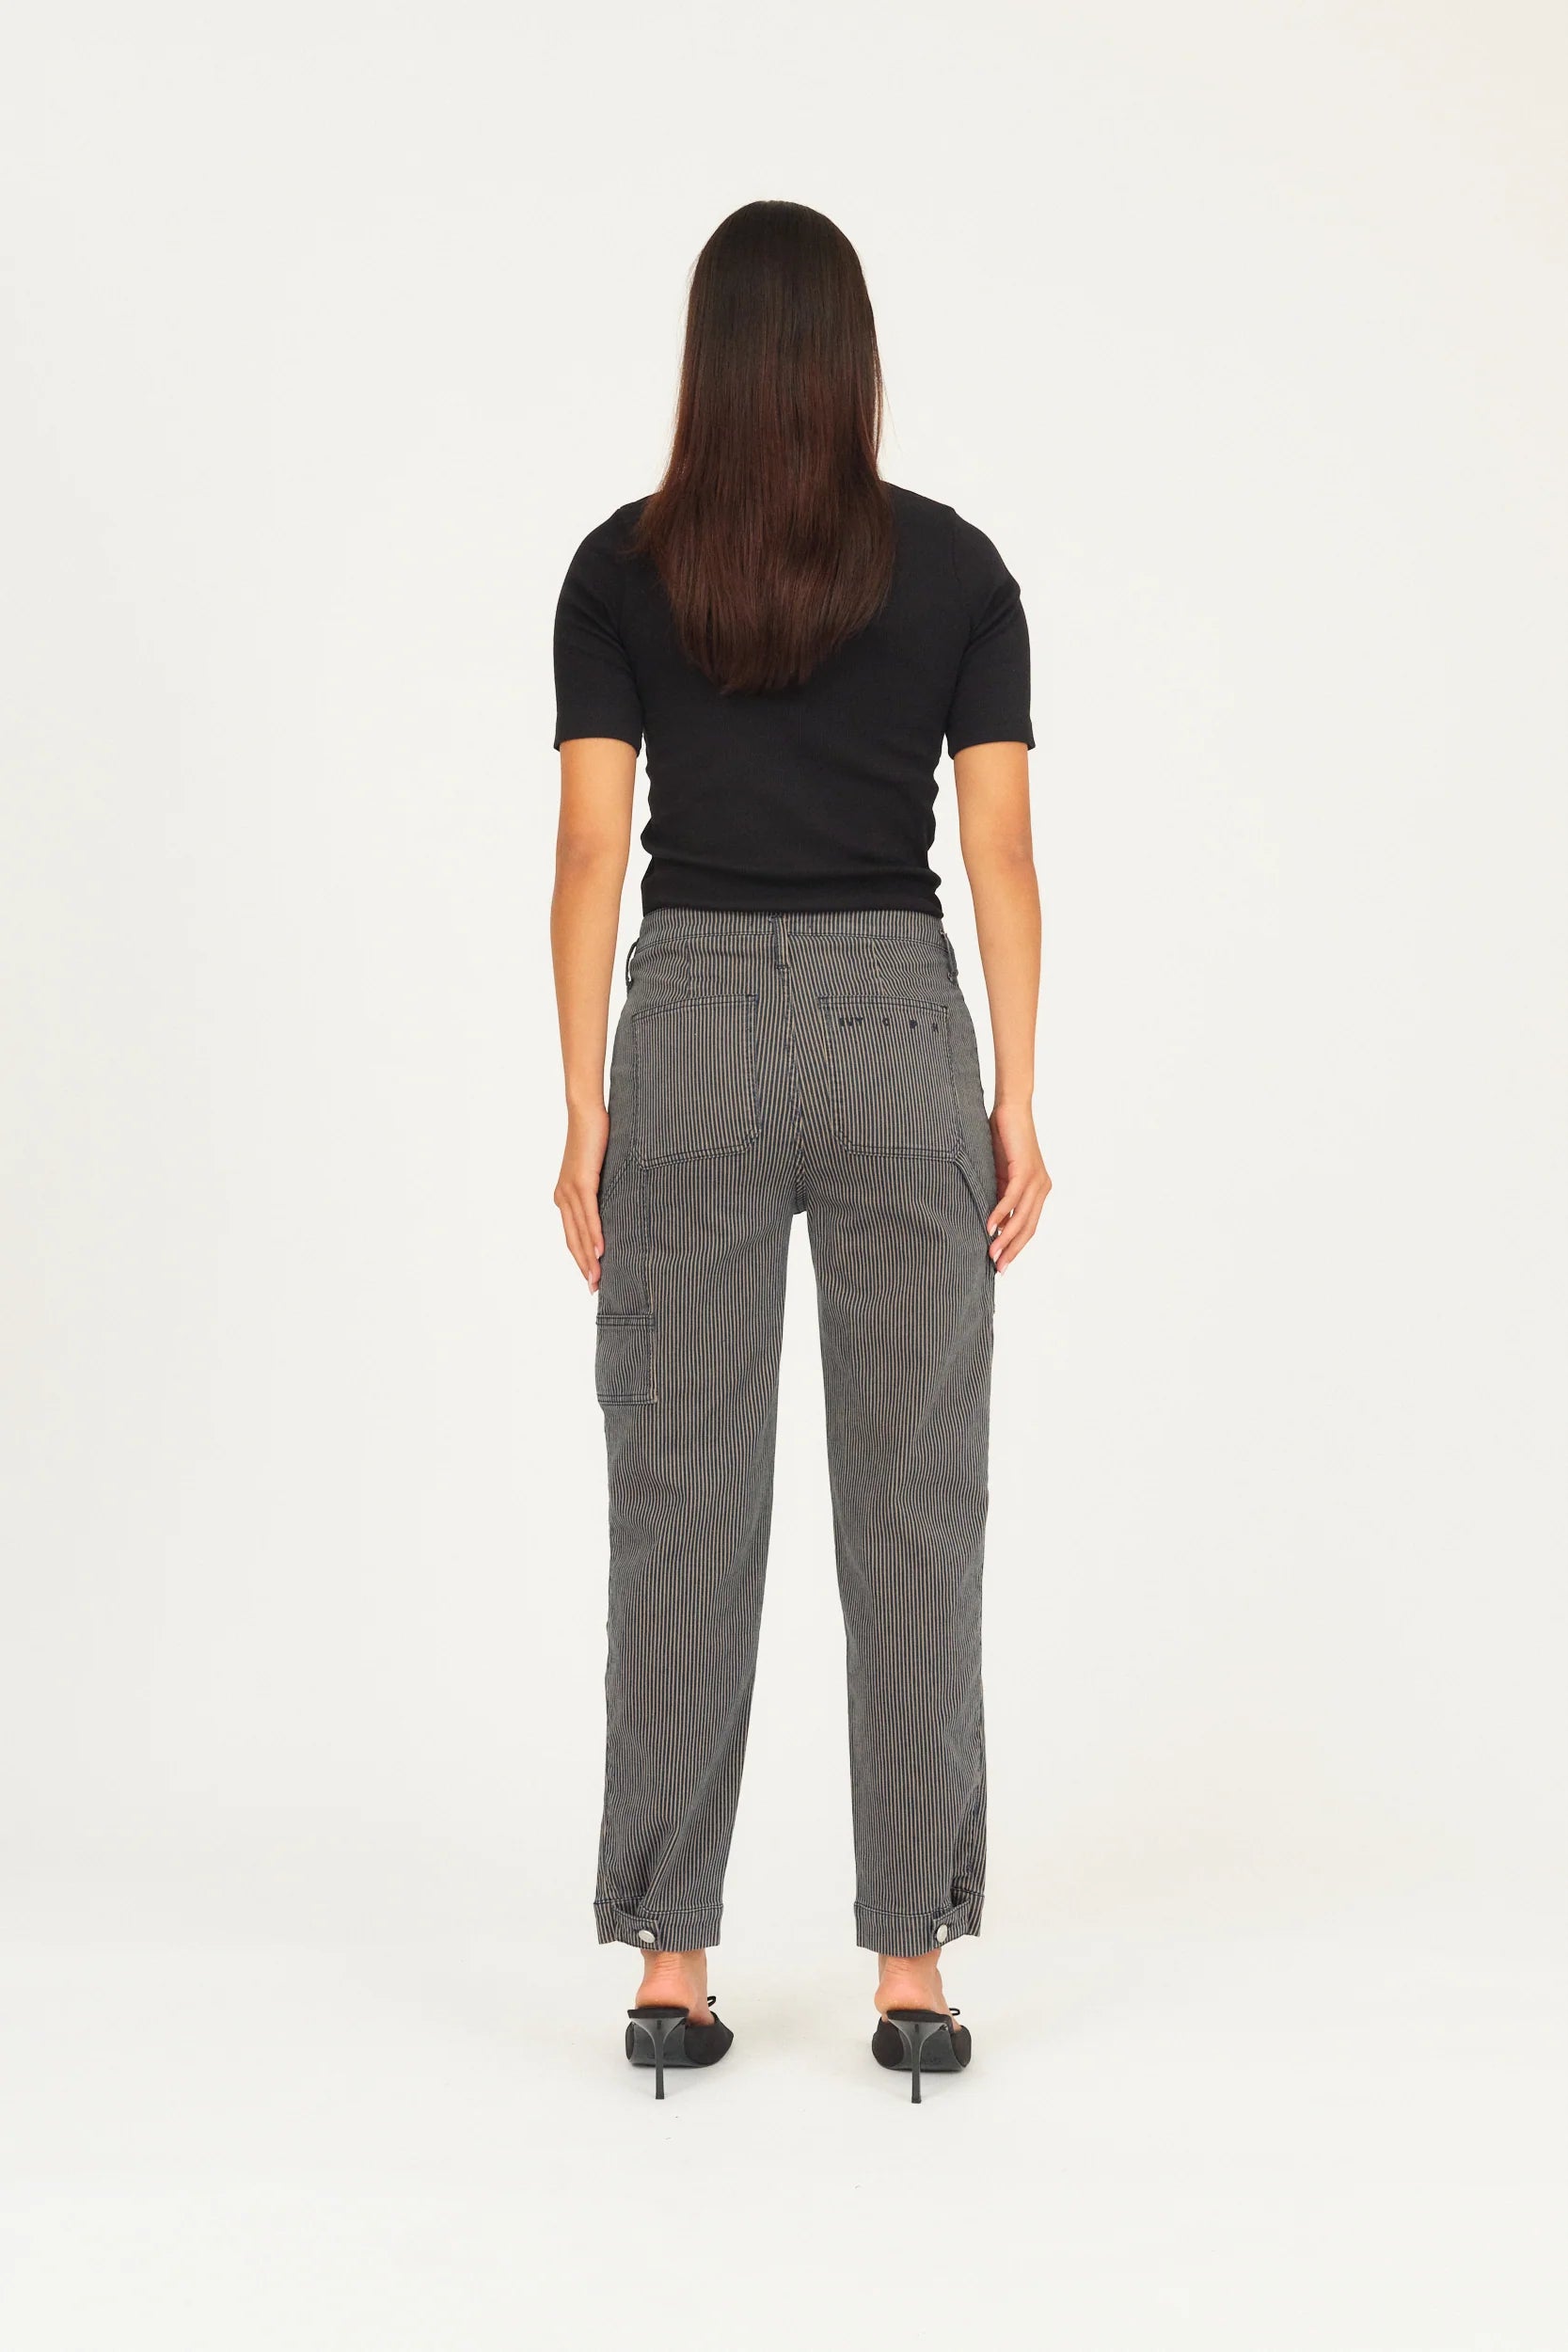 IVY-New Tanja Worker Jeans Wash Brooklyn Stripe